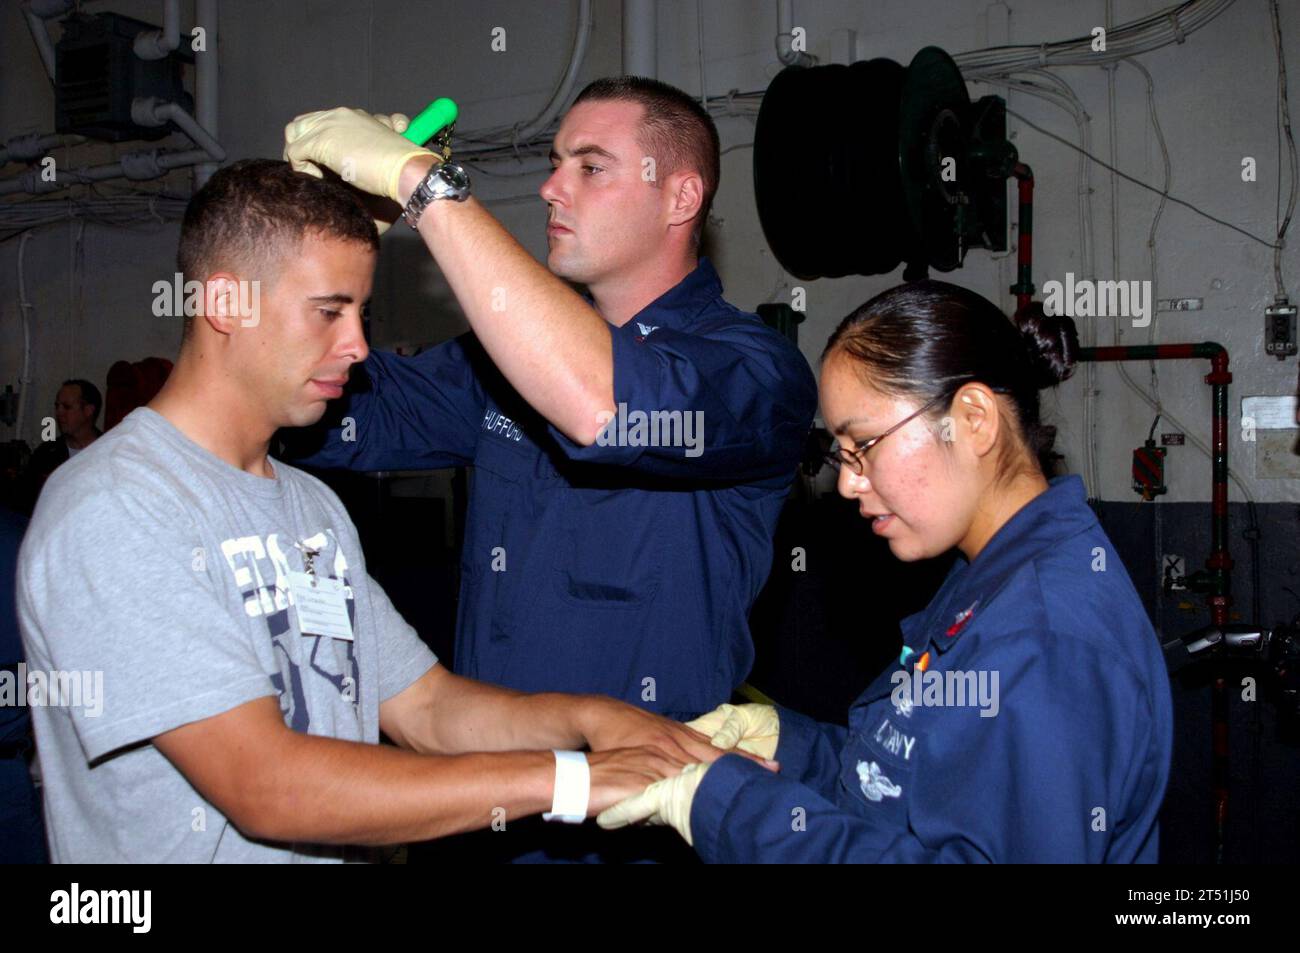 0709141786N-117 PAZIFISCHER OZEAN (14. September 2007) - Seeleute an Bord des amphibischen Angriffsschiffs USS Tarawa (LHA 1) führen während einer NEO-Übung (Evakuierungsoperation) eine physische Übung an einem Nichtkampfgegner durch. NEO-Übungen werden durchgeführt, um Seeleute und Marines lebensrettende Notfallverfahren in einer Zeit der Krise zu trainieren. Tarawa nimmt an einem Composite Unit Training mit der 11th Marine Expeditionary Unit vor der Küste Südkaliforniens Teil. US Navy Stockfoto